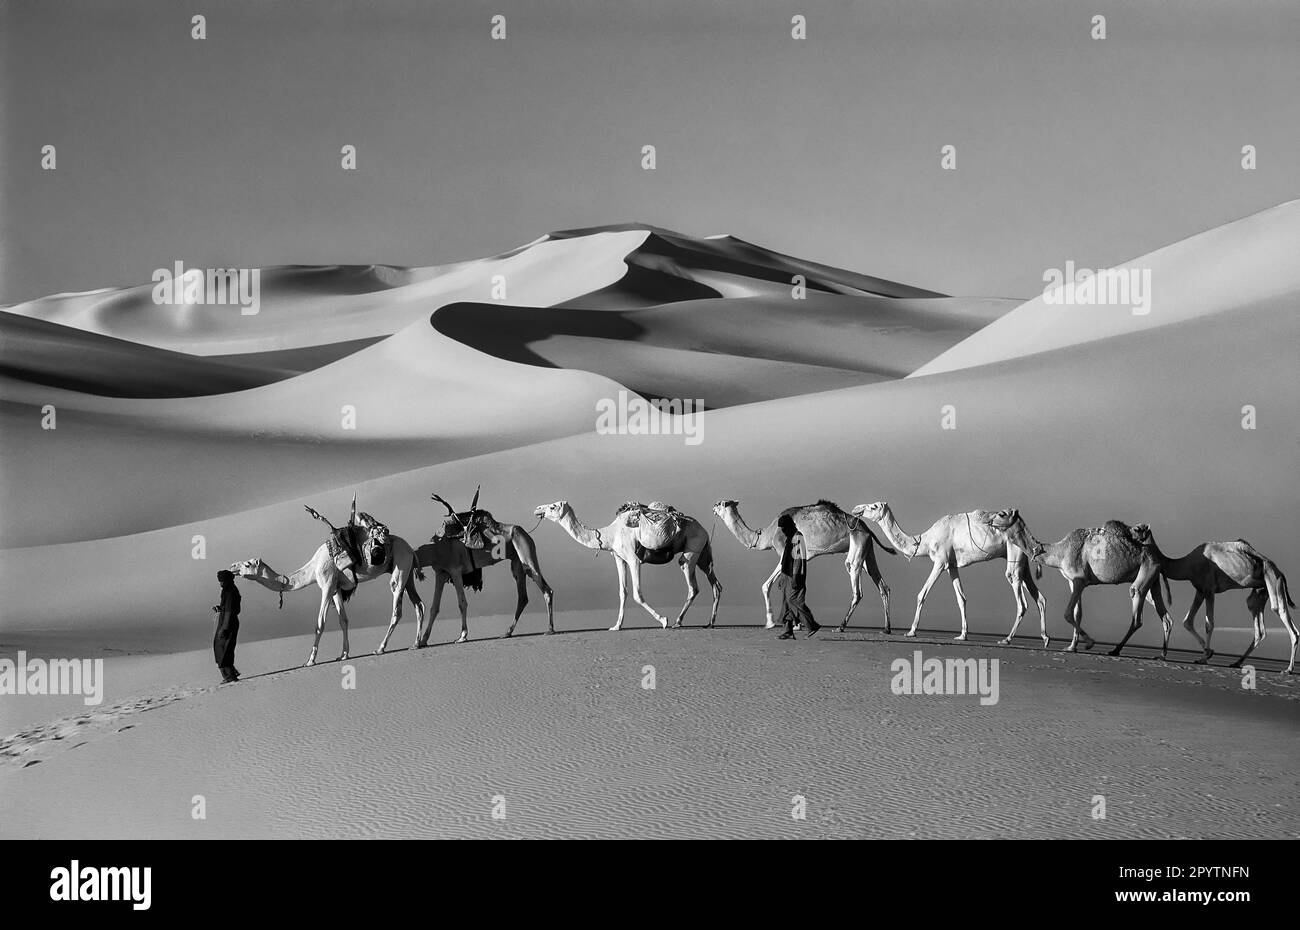 Niger, Agadez. Désert du Sahara. Ar montagnes. Sahel. Peuple de la tribu Tuareg. Petite caravane de chameaux. Dunes de sable. Noir et blanc. Banque D'Images